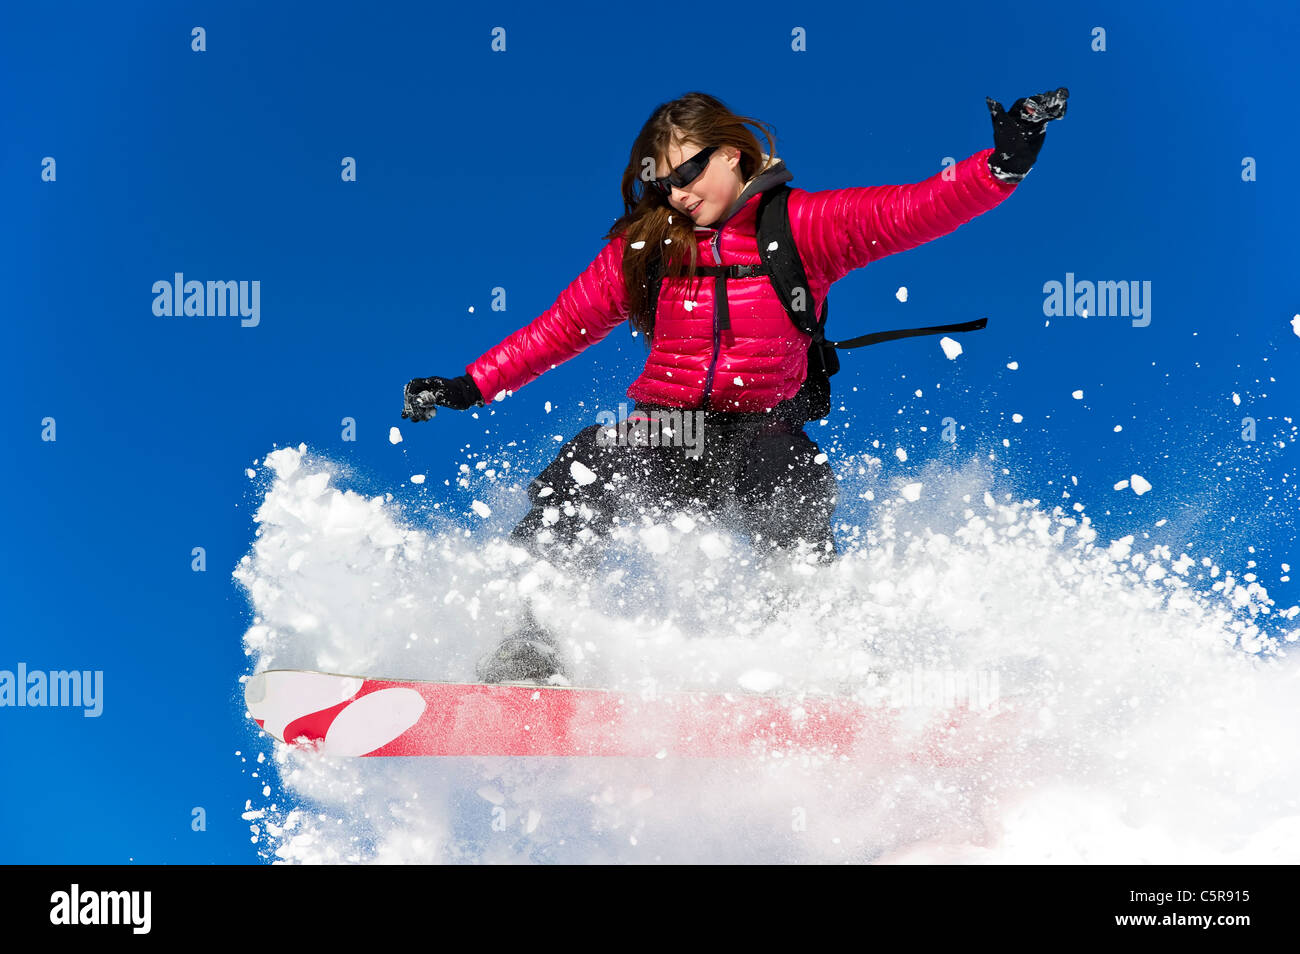 Un Snowboarder riding fresh powder snow. Banque D'Images